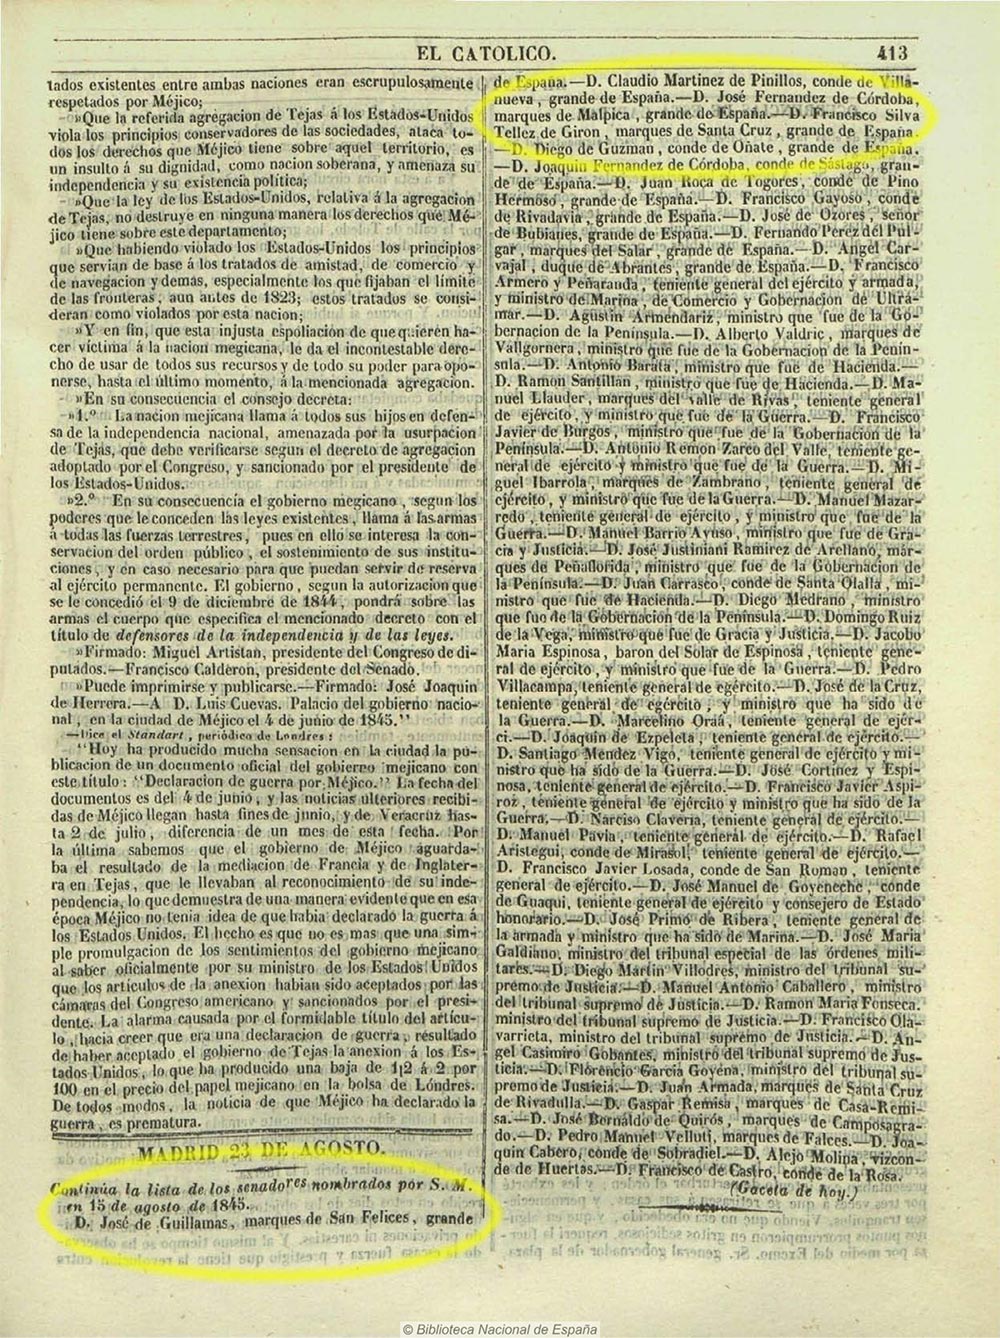 El Católico 23/8/1845. Nombramiento de senadores vitalicios